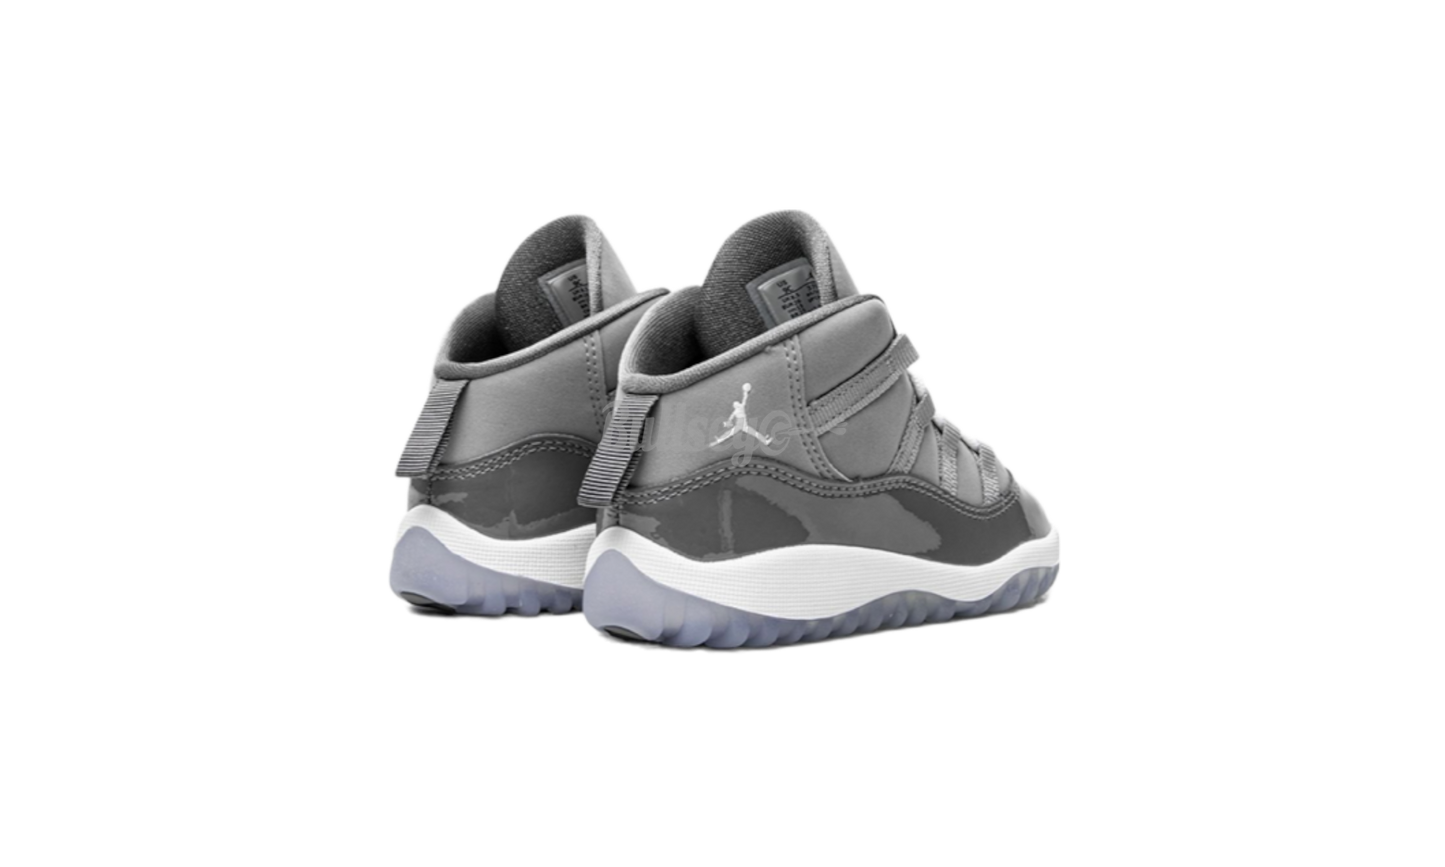 Air Jordan 11 Retro "Cool Grey" Toddler